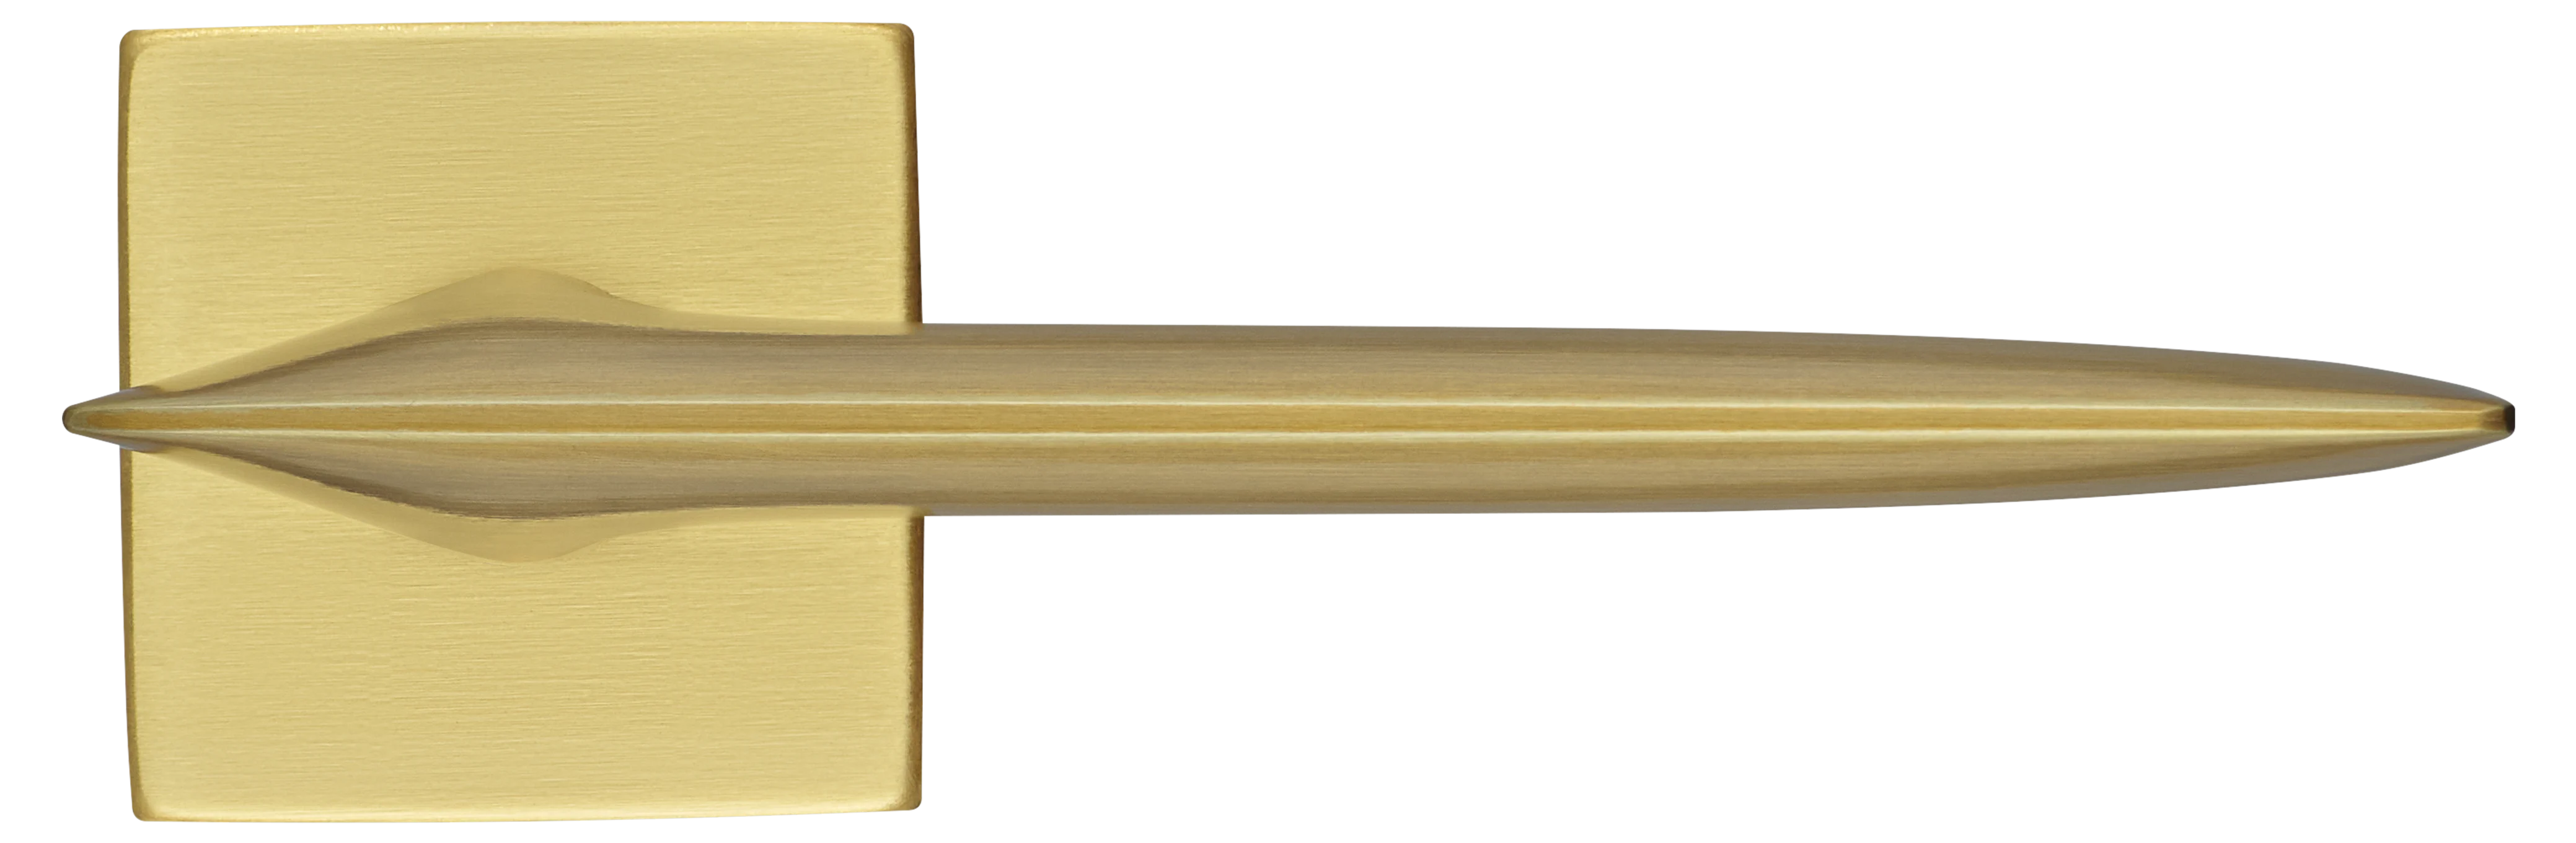 GALACTIC S5 OSA, ручка дверная, цвет -  матовое золото фото купить в Челябинске